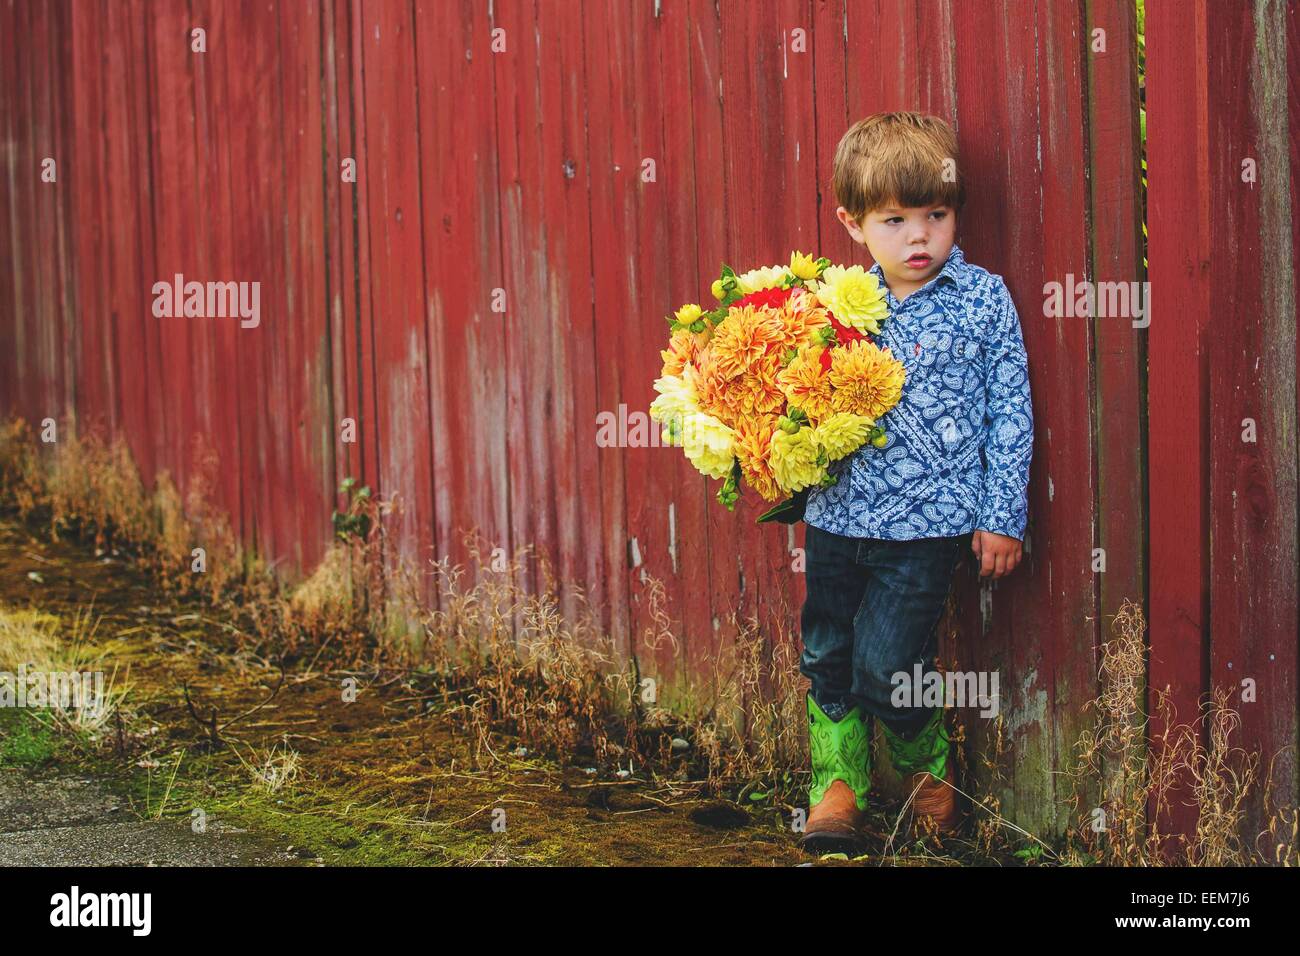 Junge, der an einer roten Wand steht und einen Blumenstrauß hält Stockfoto